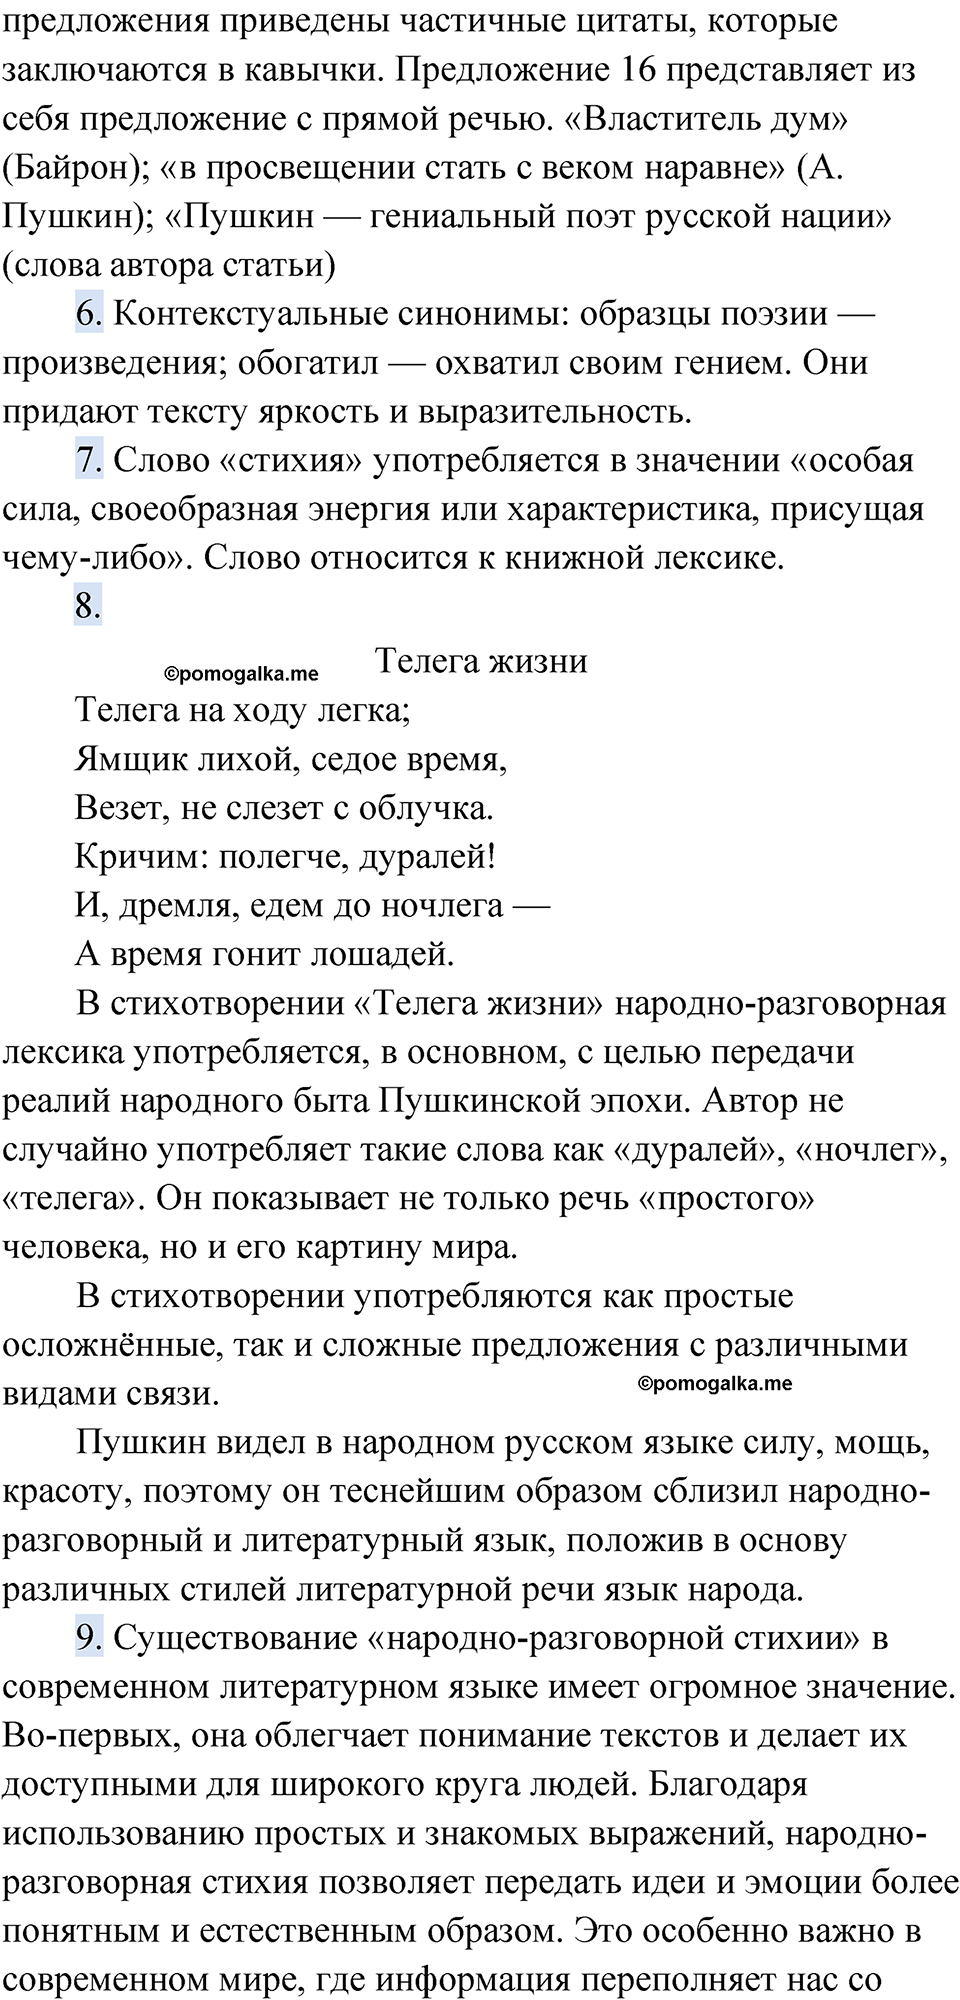 страница 14 Анализируем текст русский язык 9 класс Быстрова 1 часть 2022 год